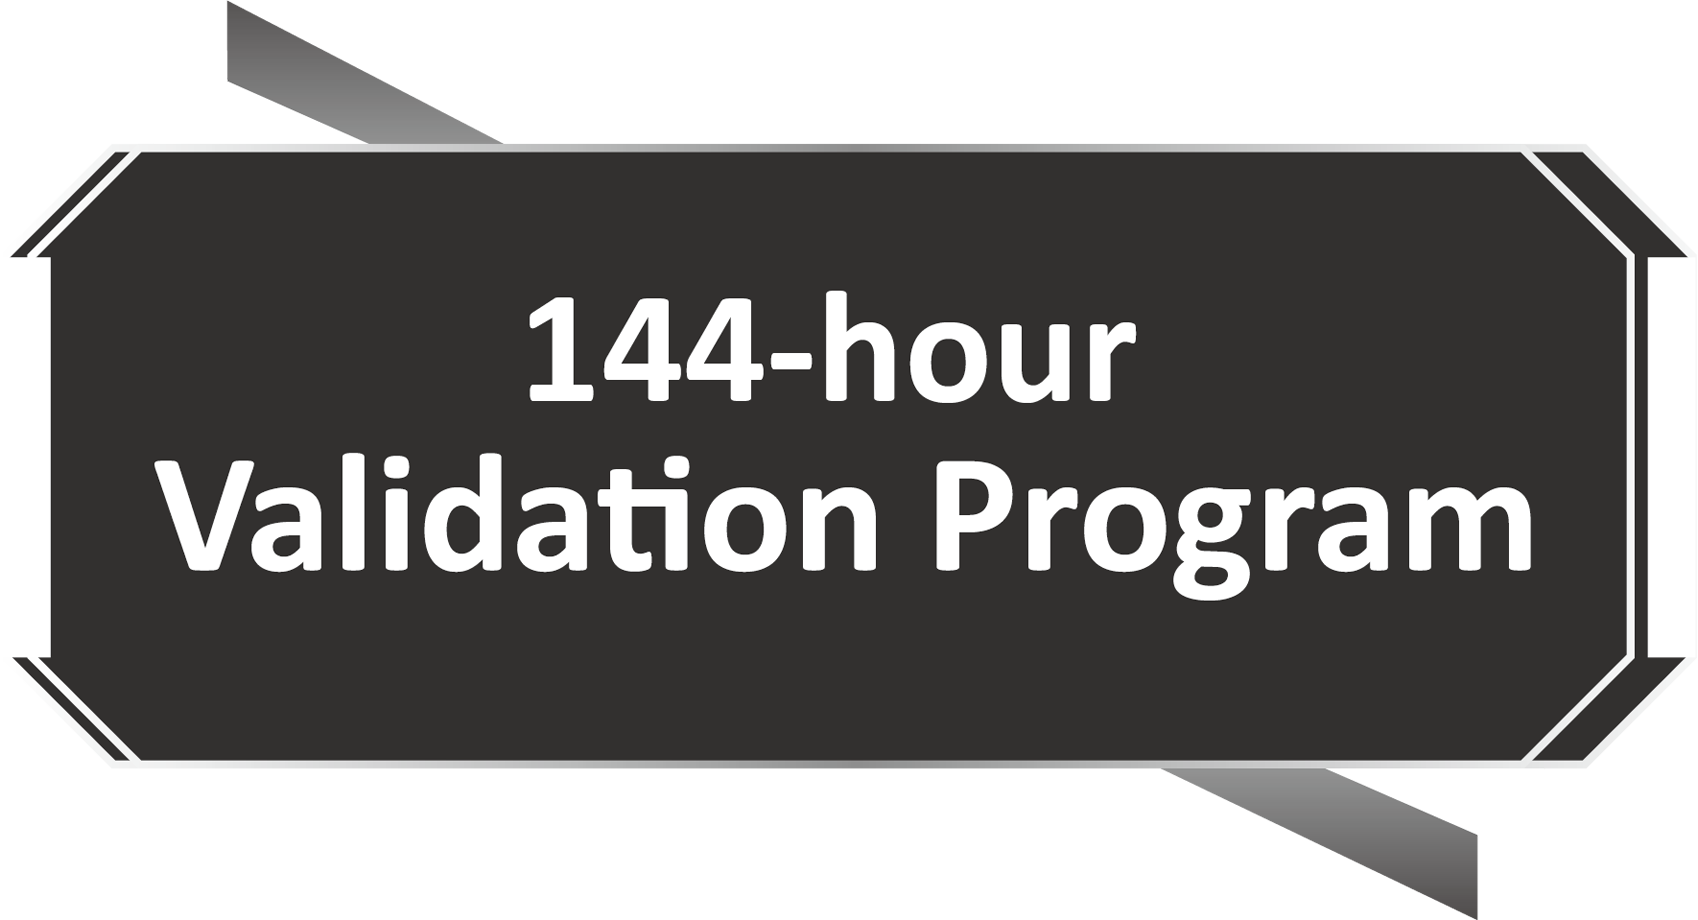 Programme de validation de 144 heures